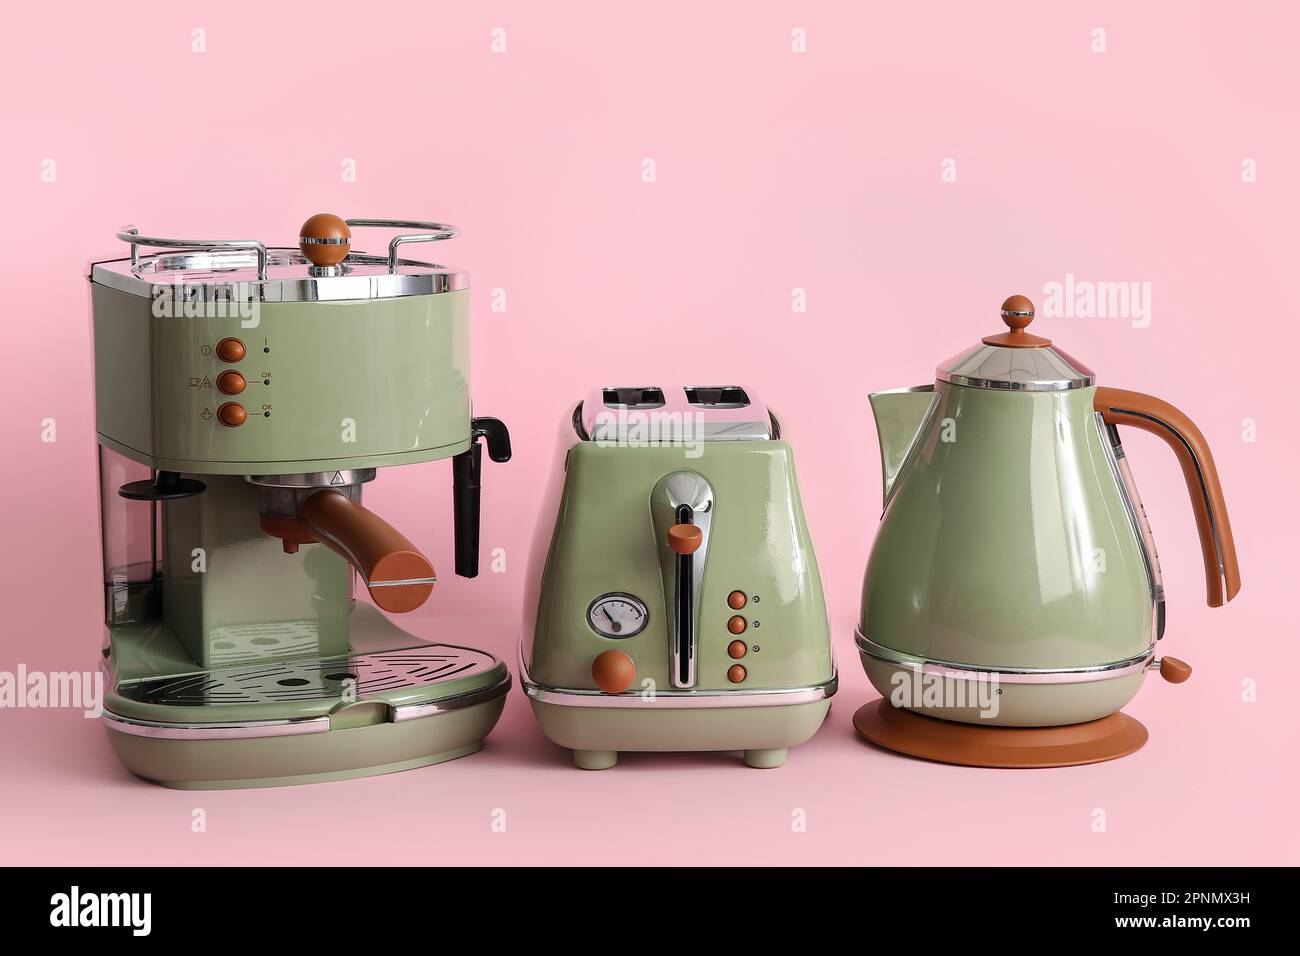 Kaffeemaschine, Toaster und elektrischer Wasserkocher auf pinkfarbenem  Hintergrund Stockfotografie - Alamy